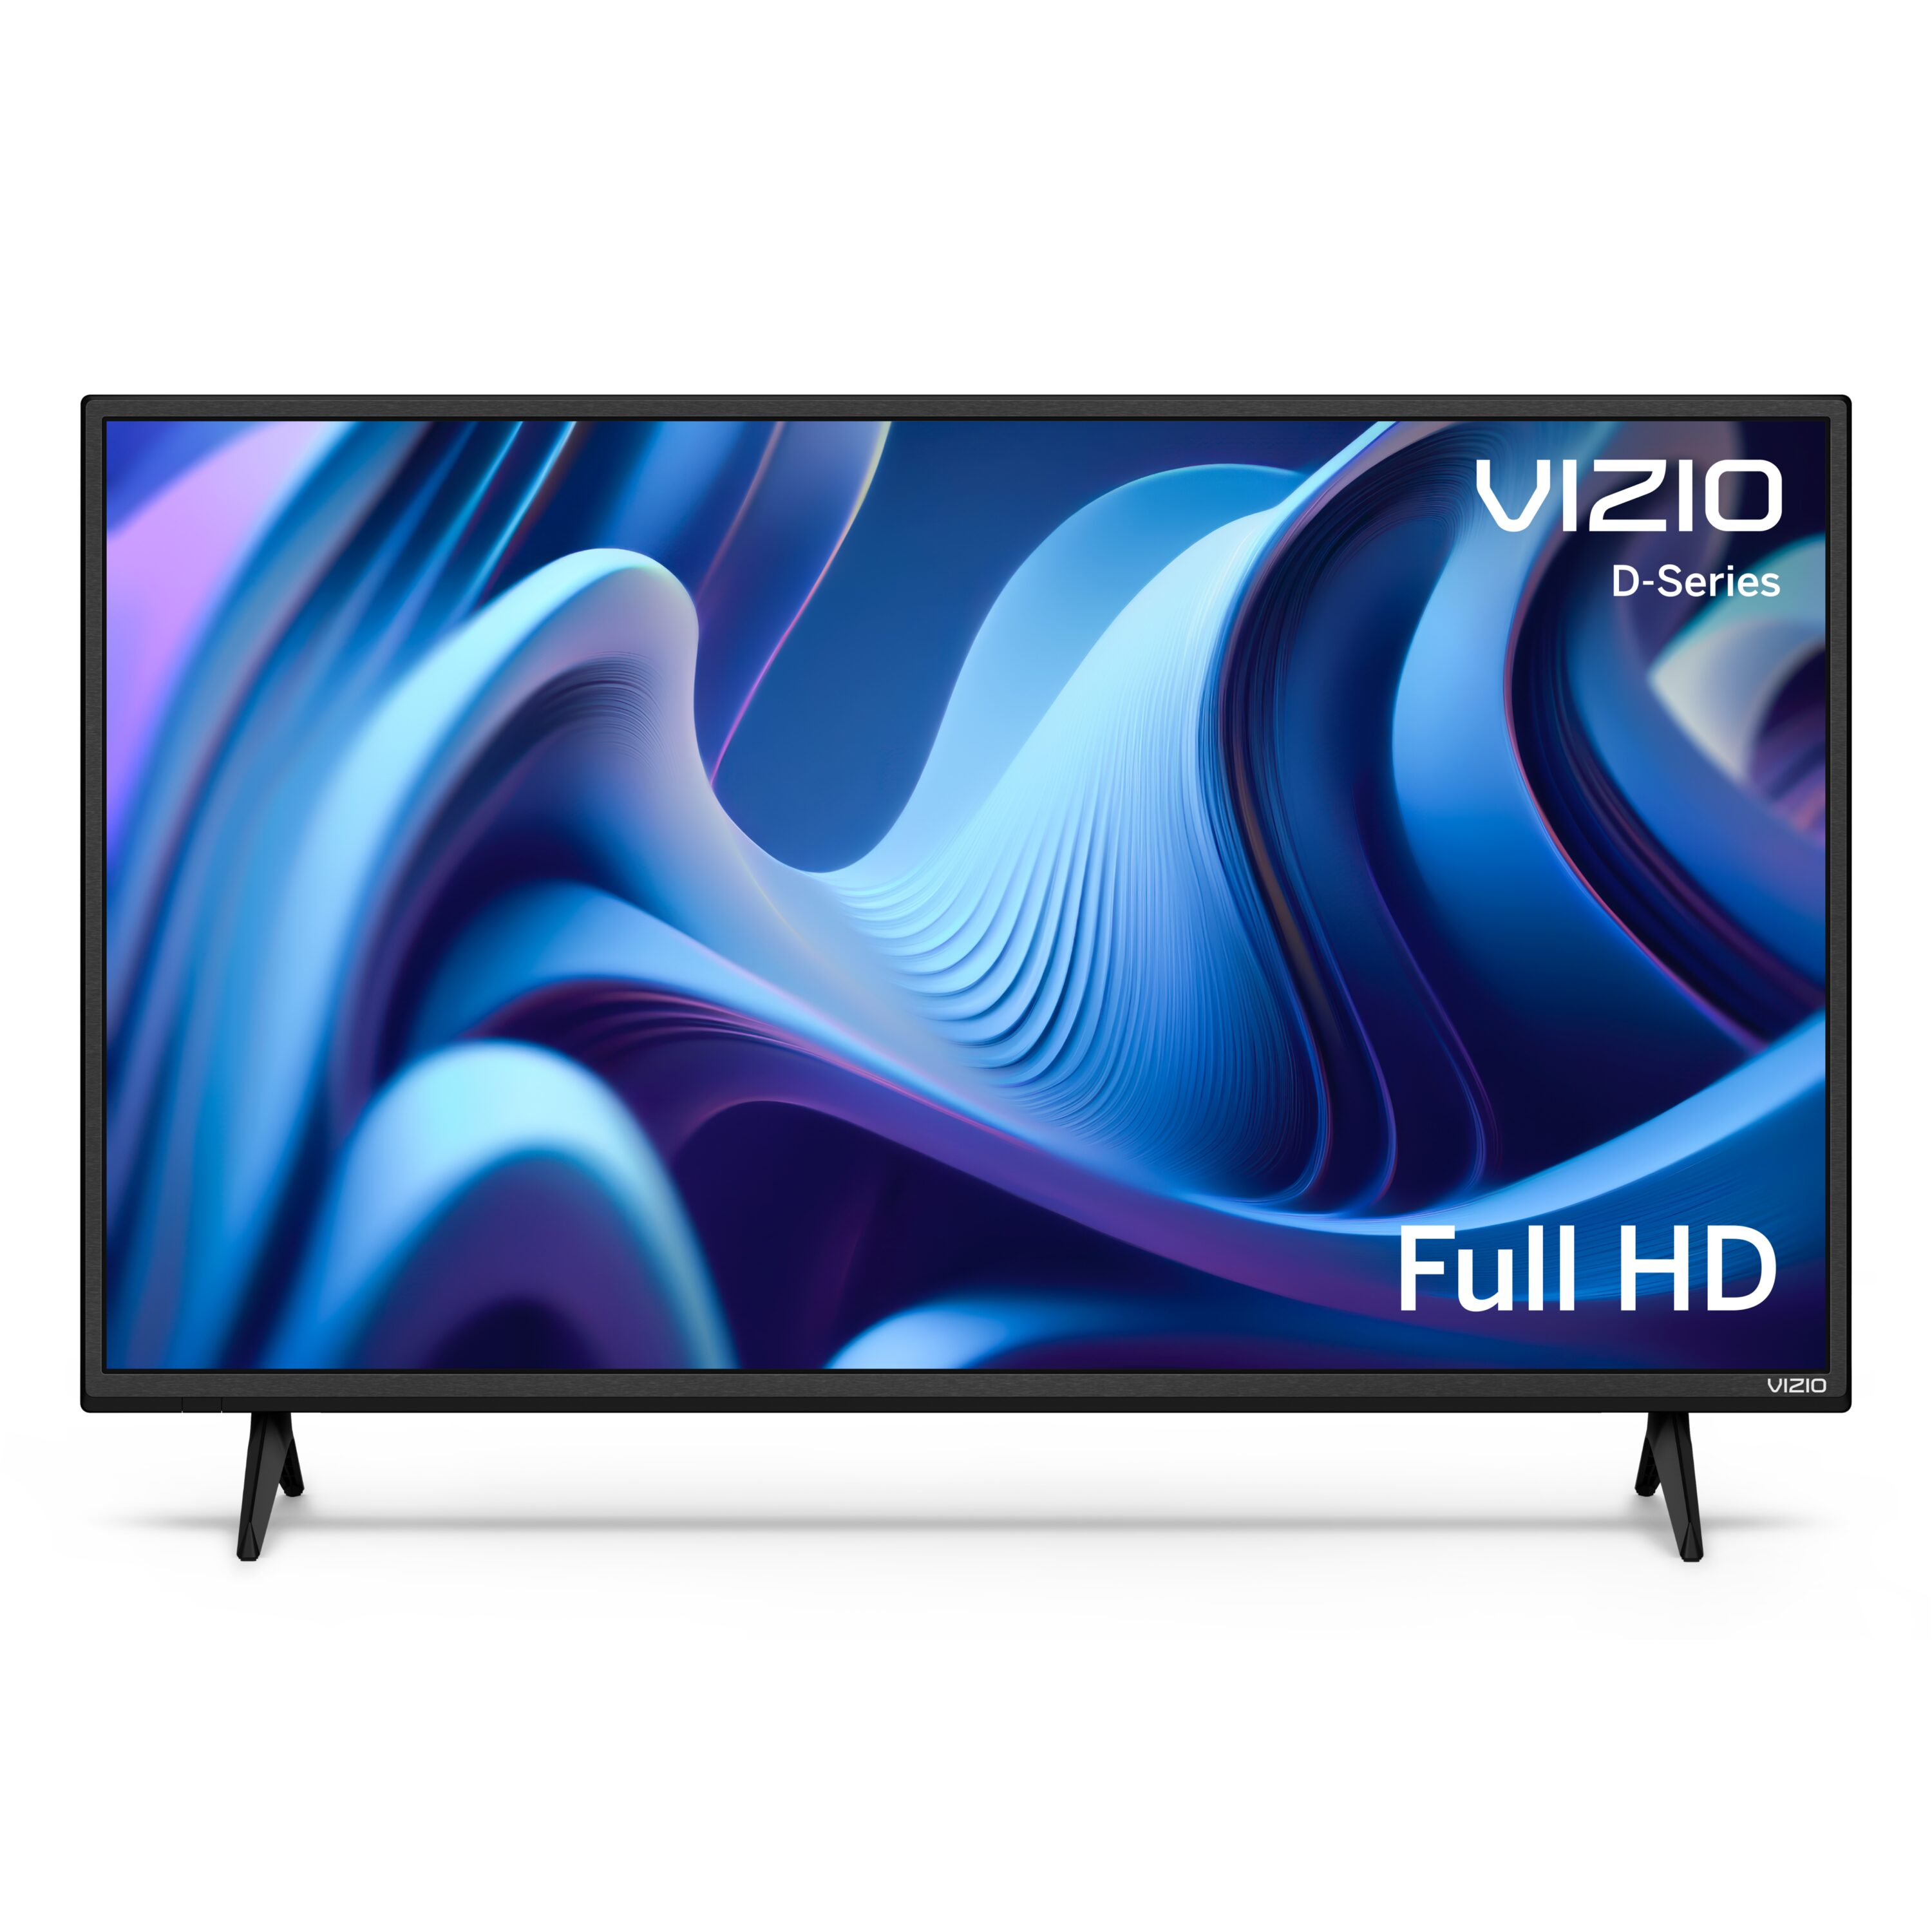 VIZIO 40" Class D-Series FHD LED Smart TV D40f-J09 - image 3 of 18